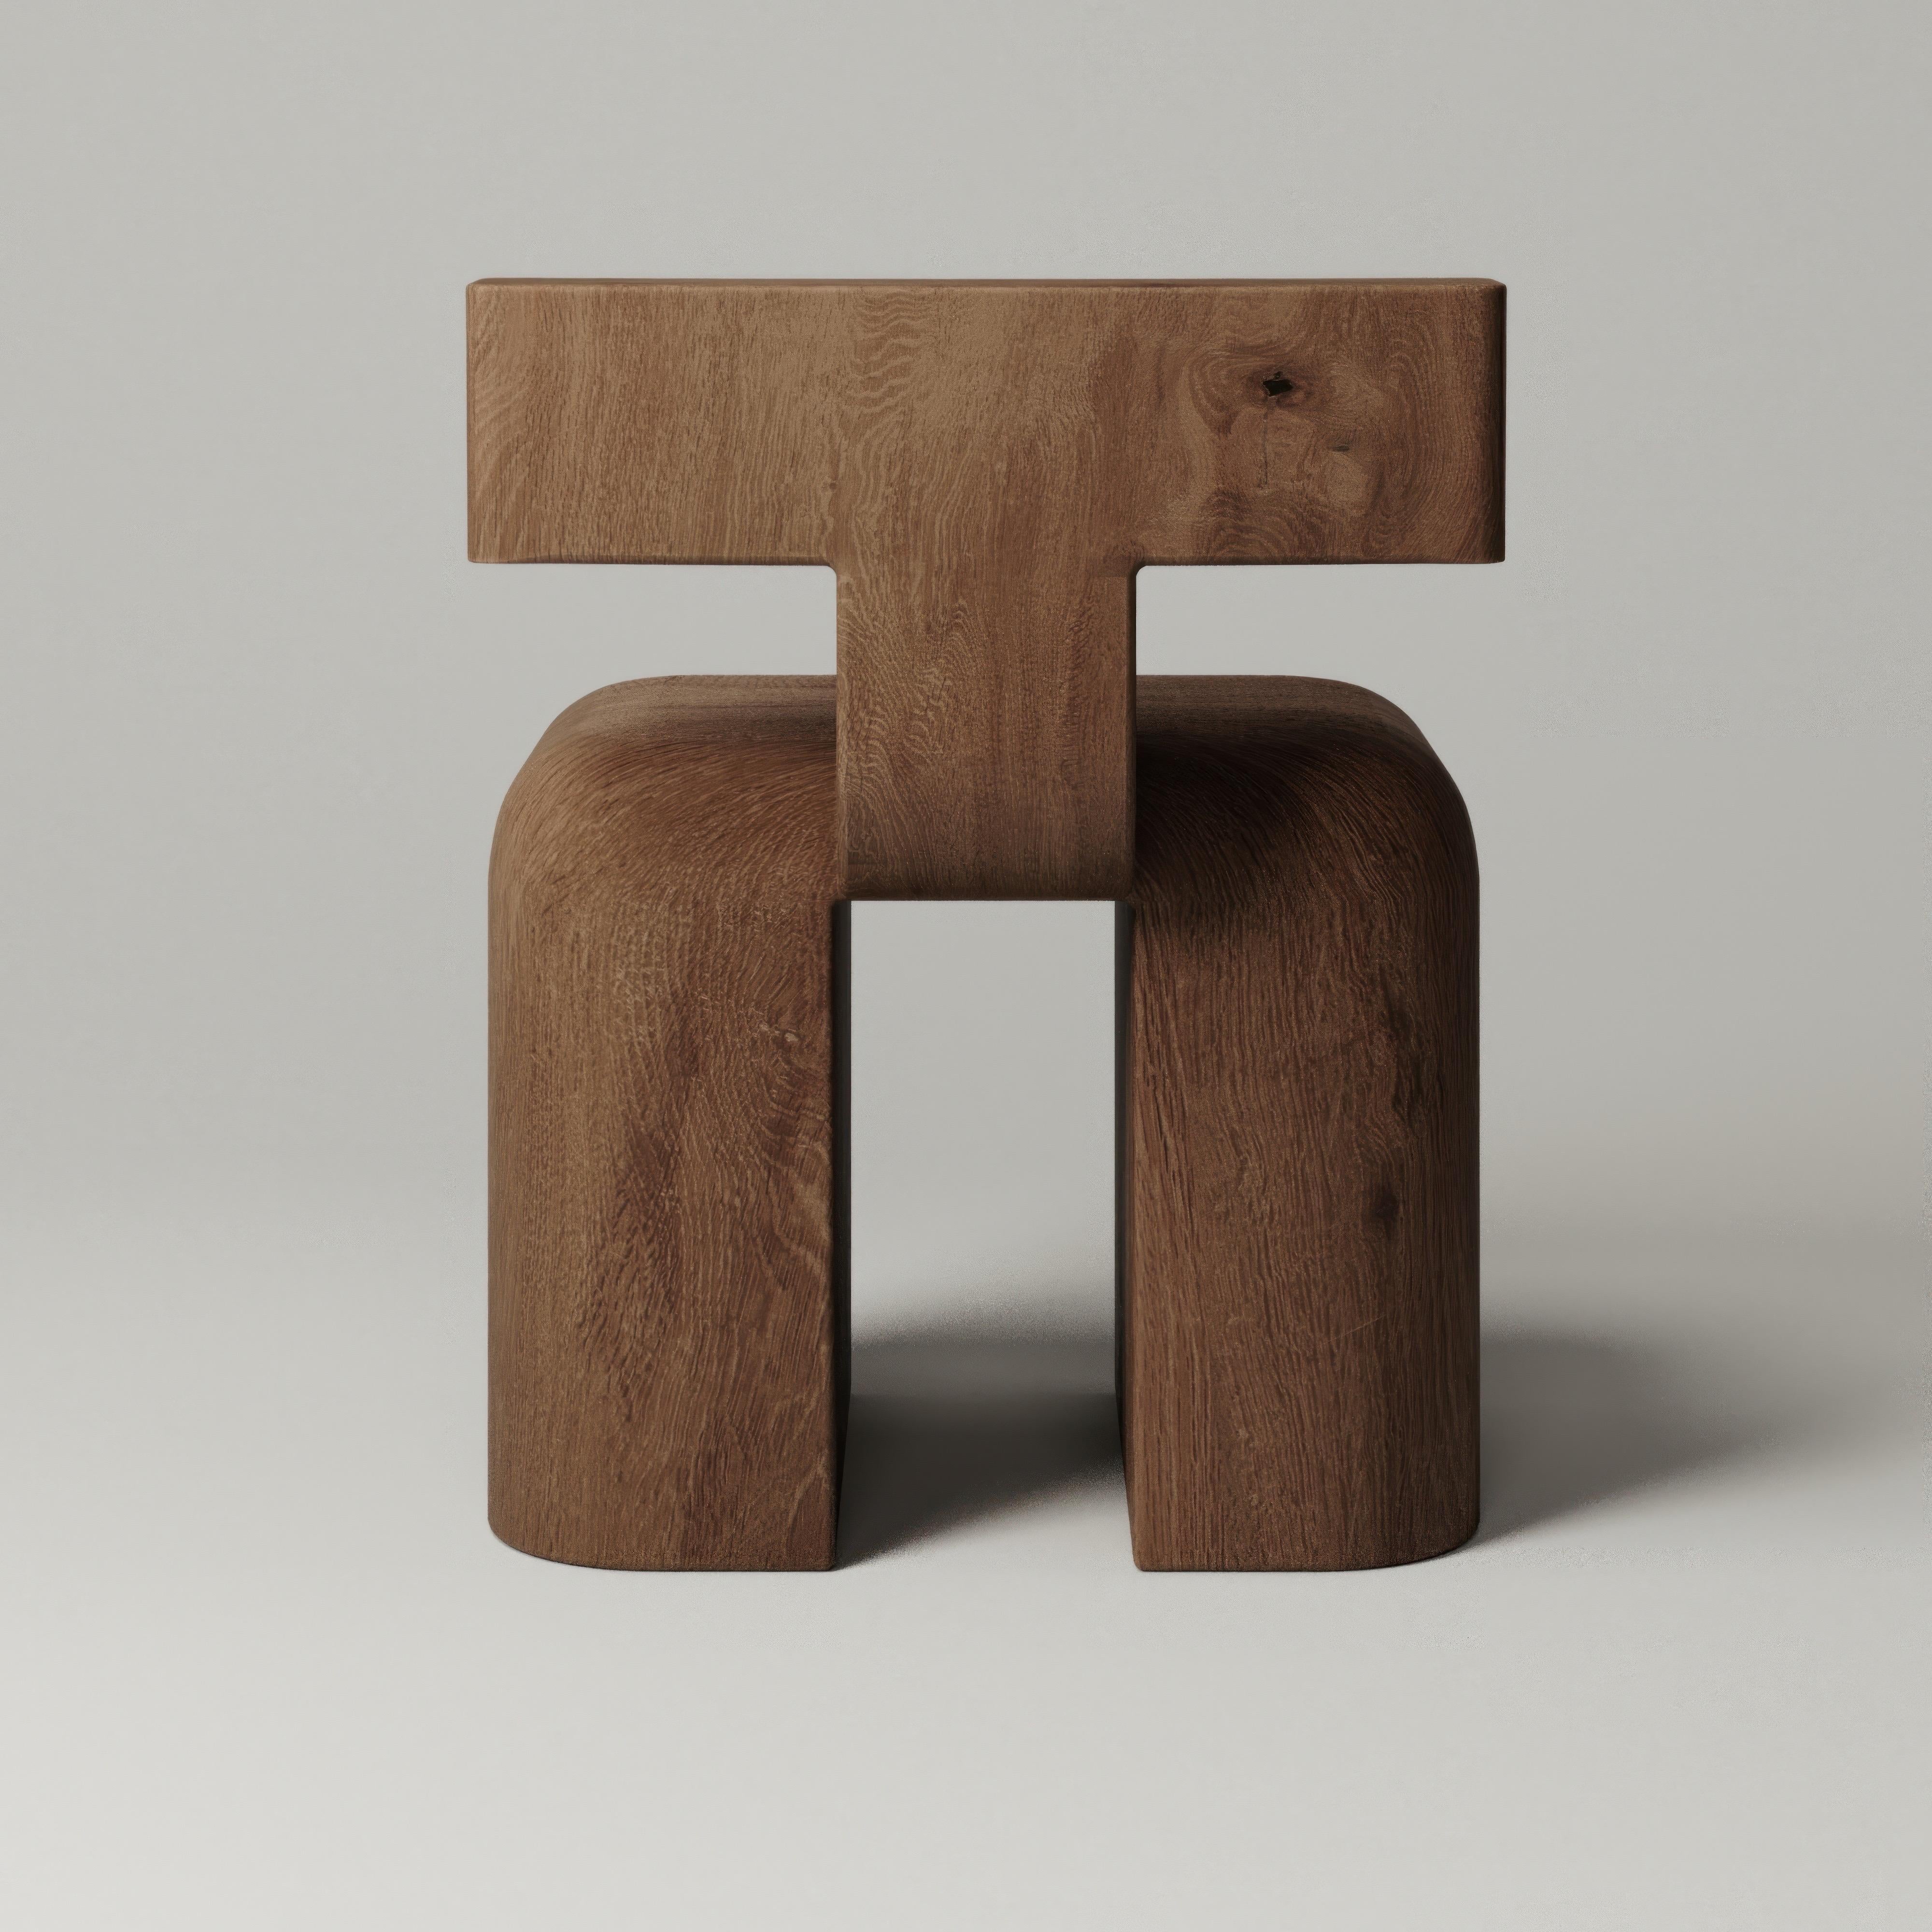 La chaise M_013 est délicatement sculptée dans du chêne massif. Sa base aux proportions généreuses et sa forme sculpturale font de cette chaise un ajout unique à tout intérieur. 

Le studio de design Monolith, basé à New York, se concentre sur les